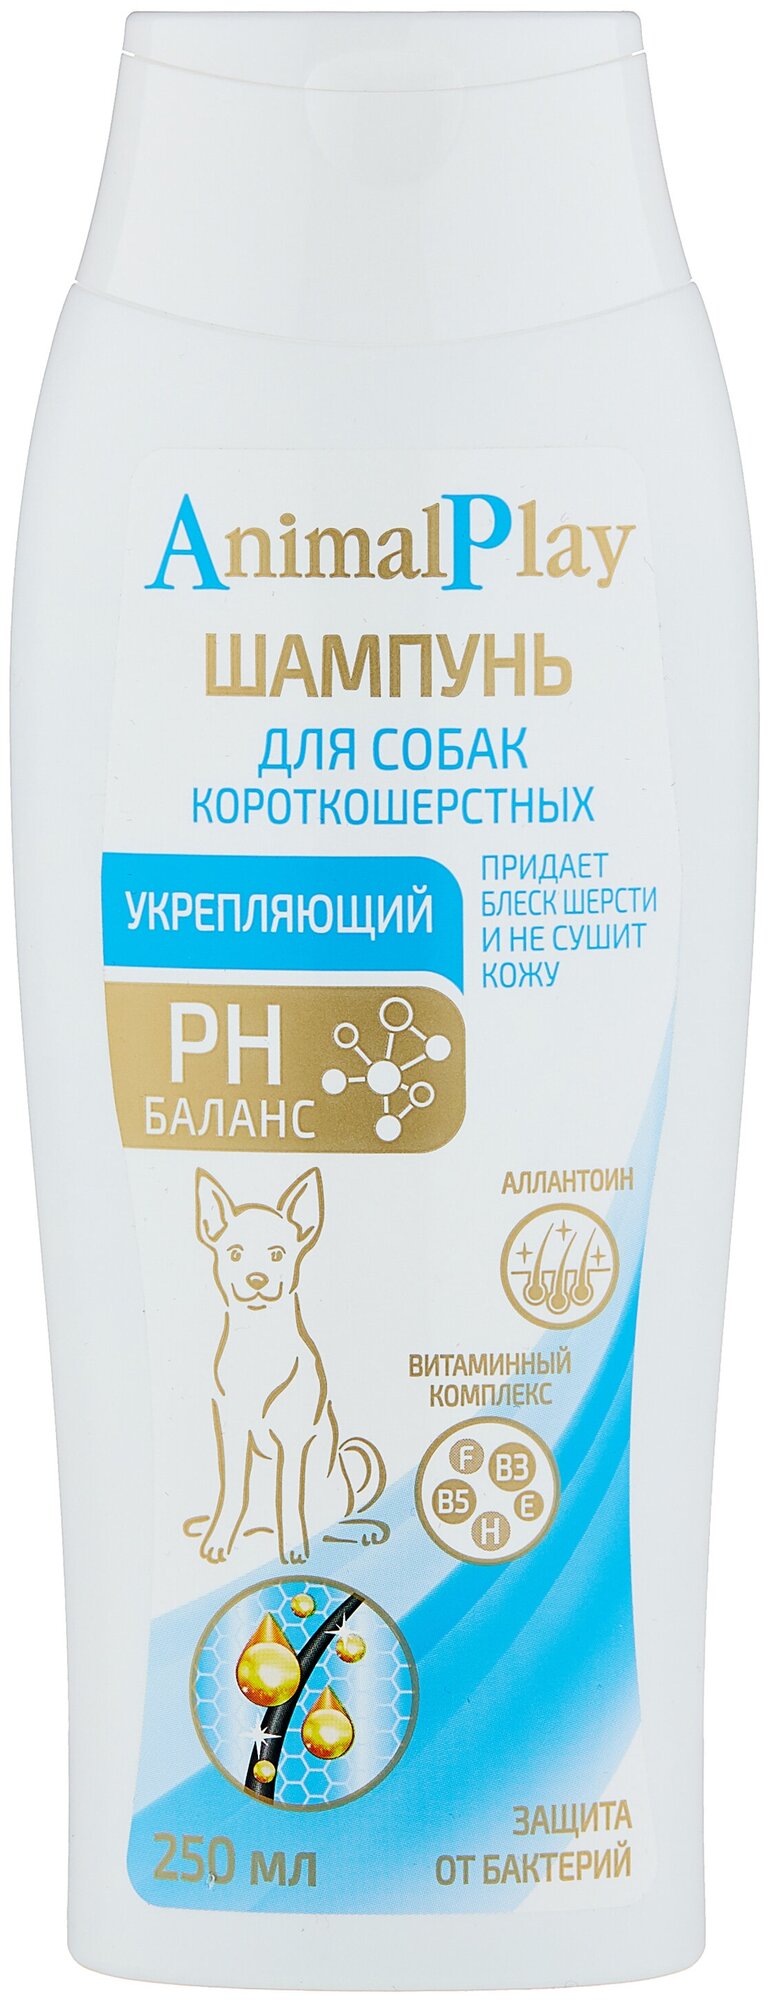 Шампунь Animal Play укрепляющий с аллантоином и витаминами для короткошерстных собак, 250мл